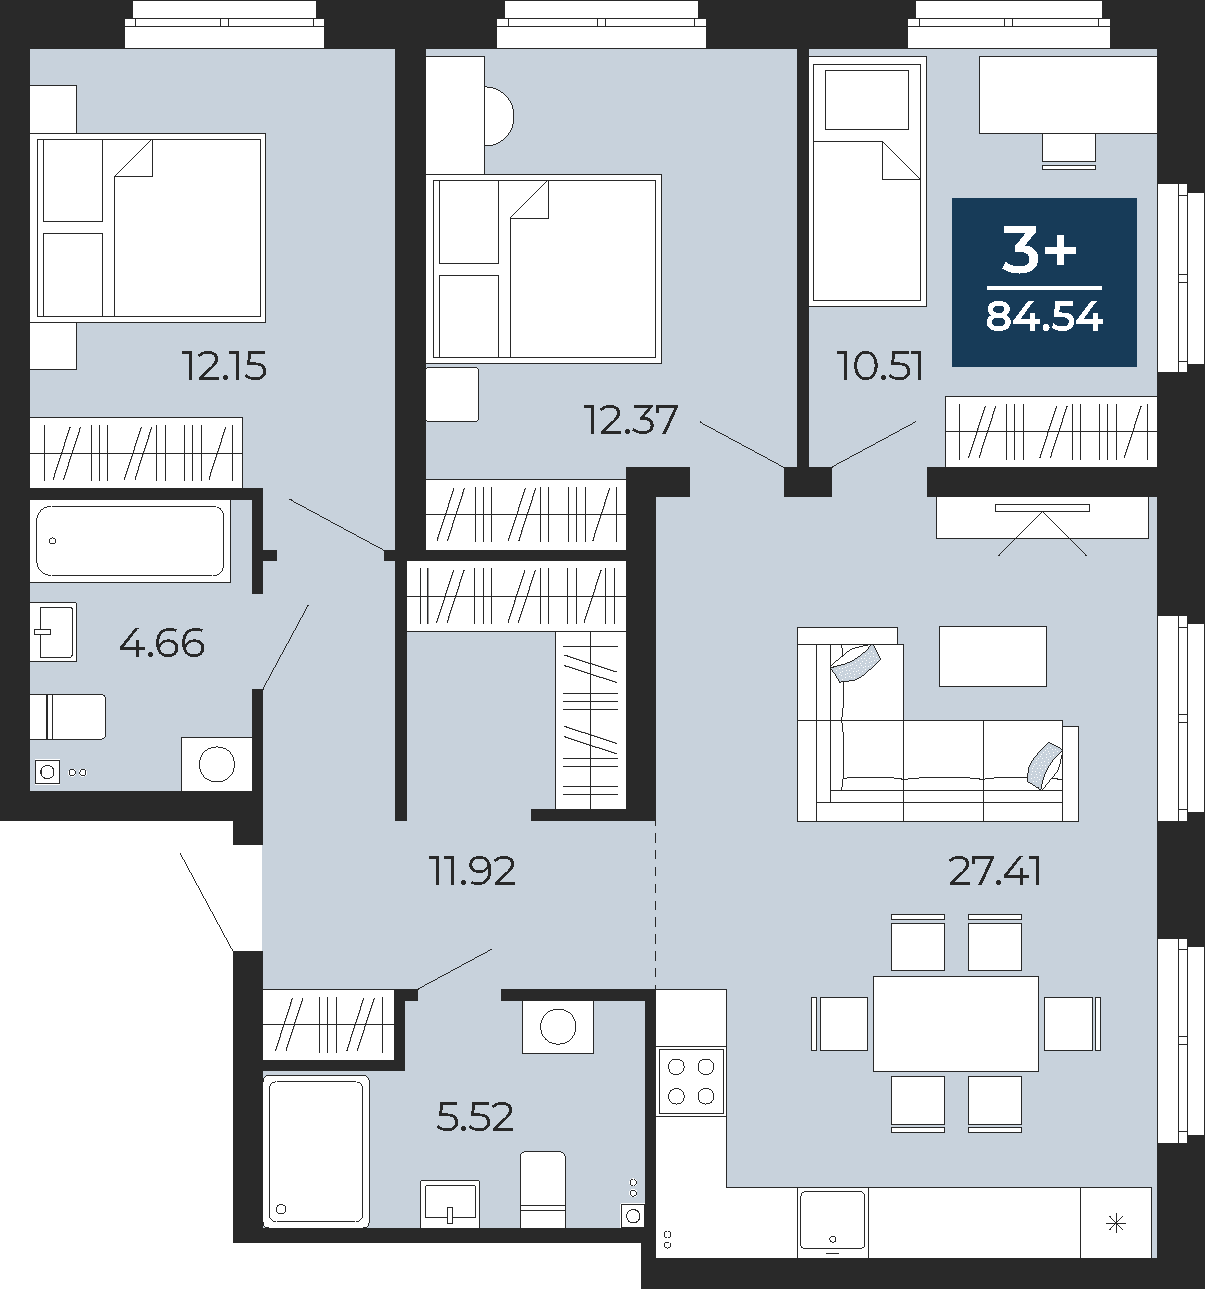 Квартира № 7, 3-комнатная, 84.54 кв. м, 2 этаж